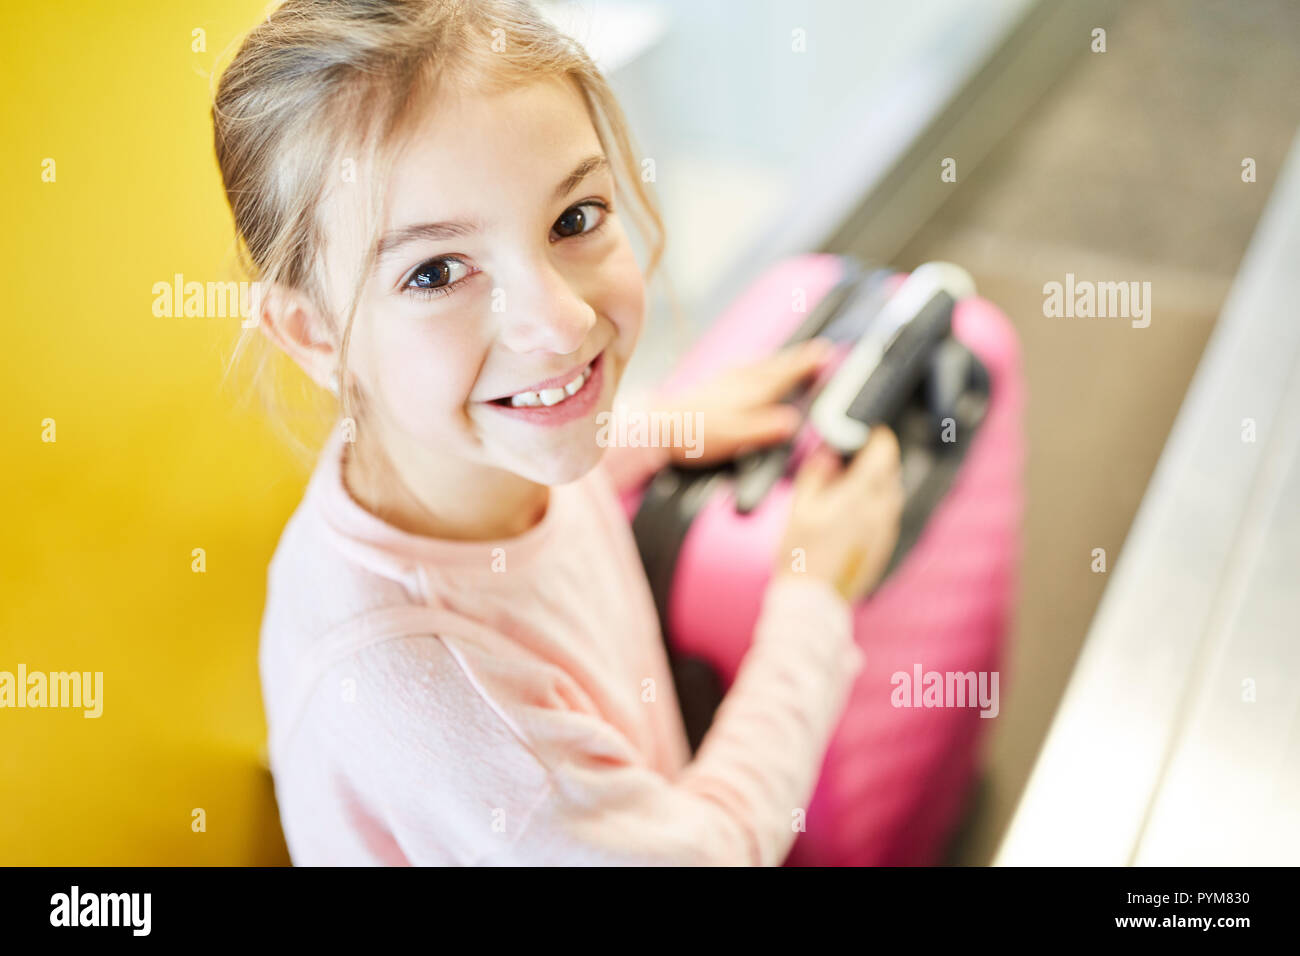 Kleines Mädchen als Passagier mit Koffer beim Check in am Flughafen reist allein Stockfoto